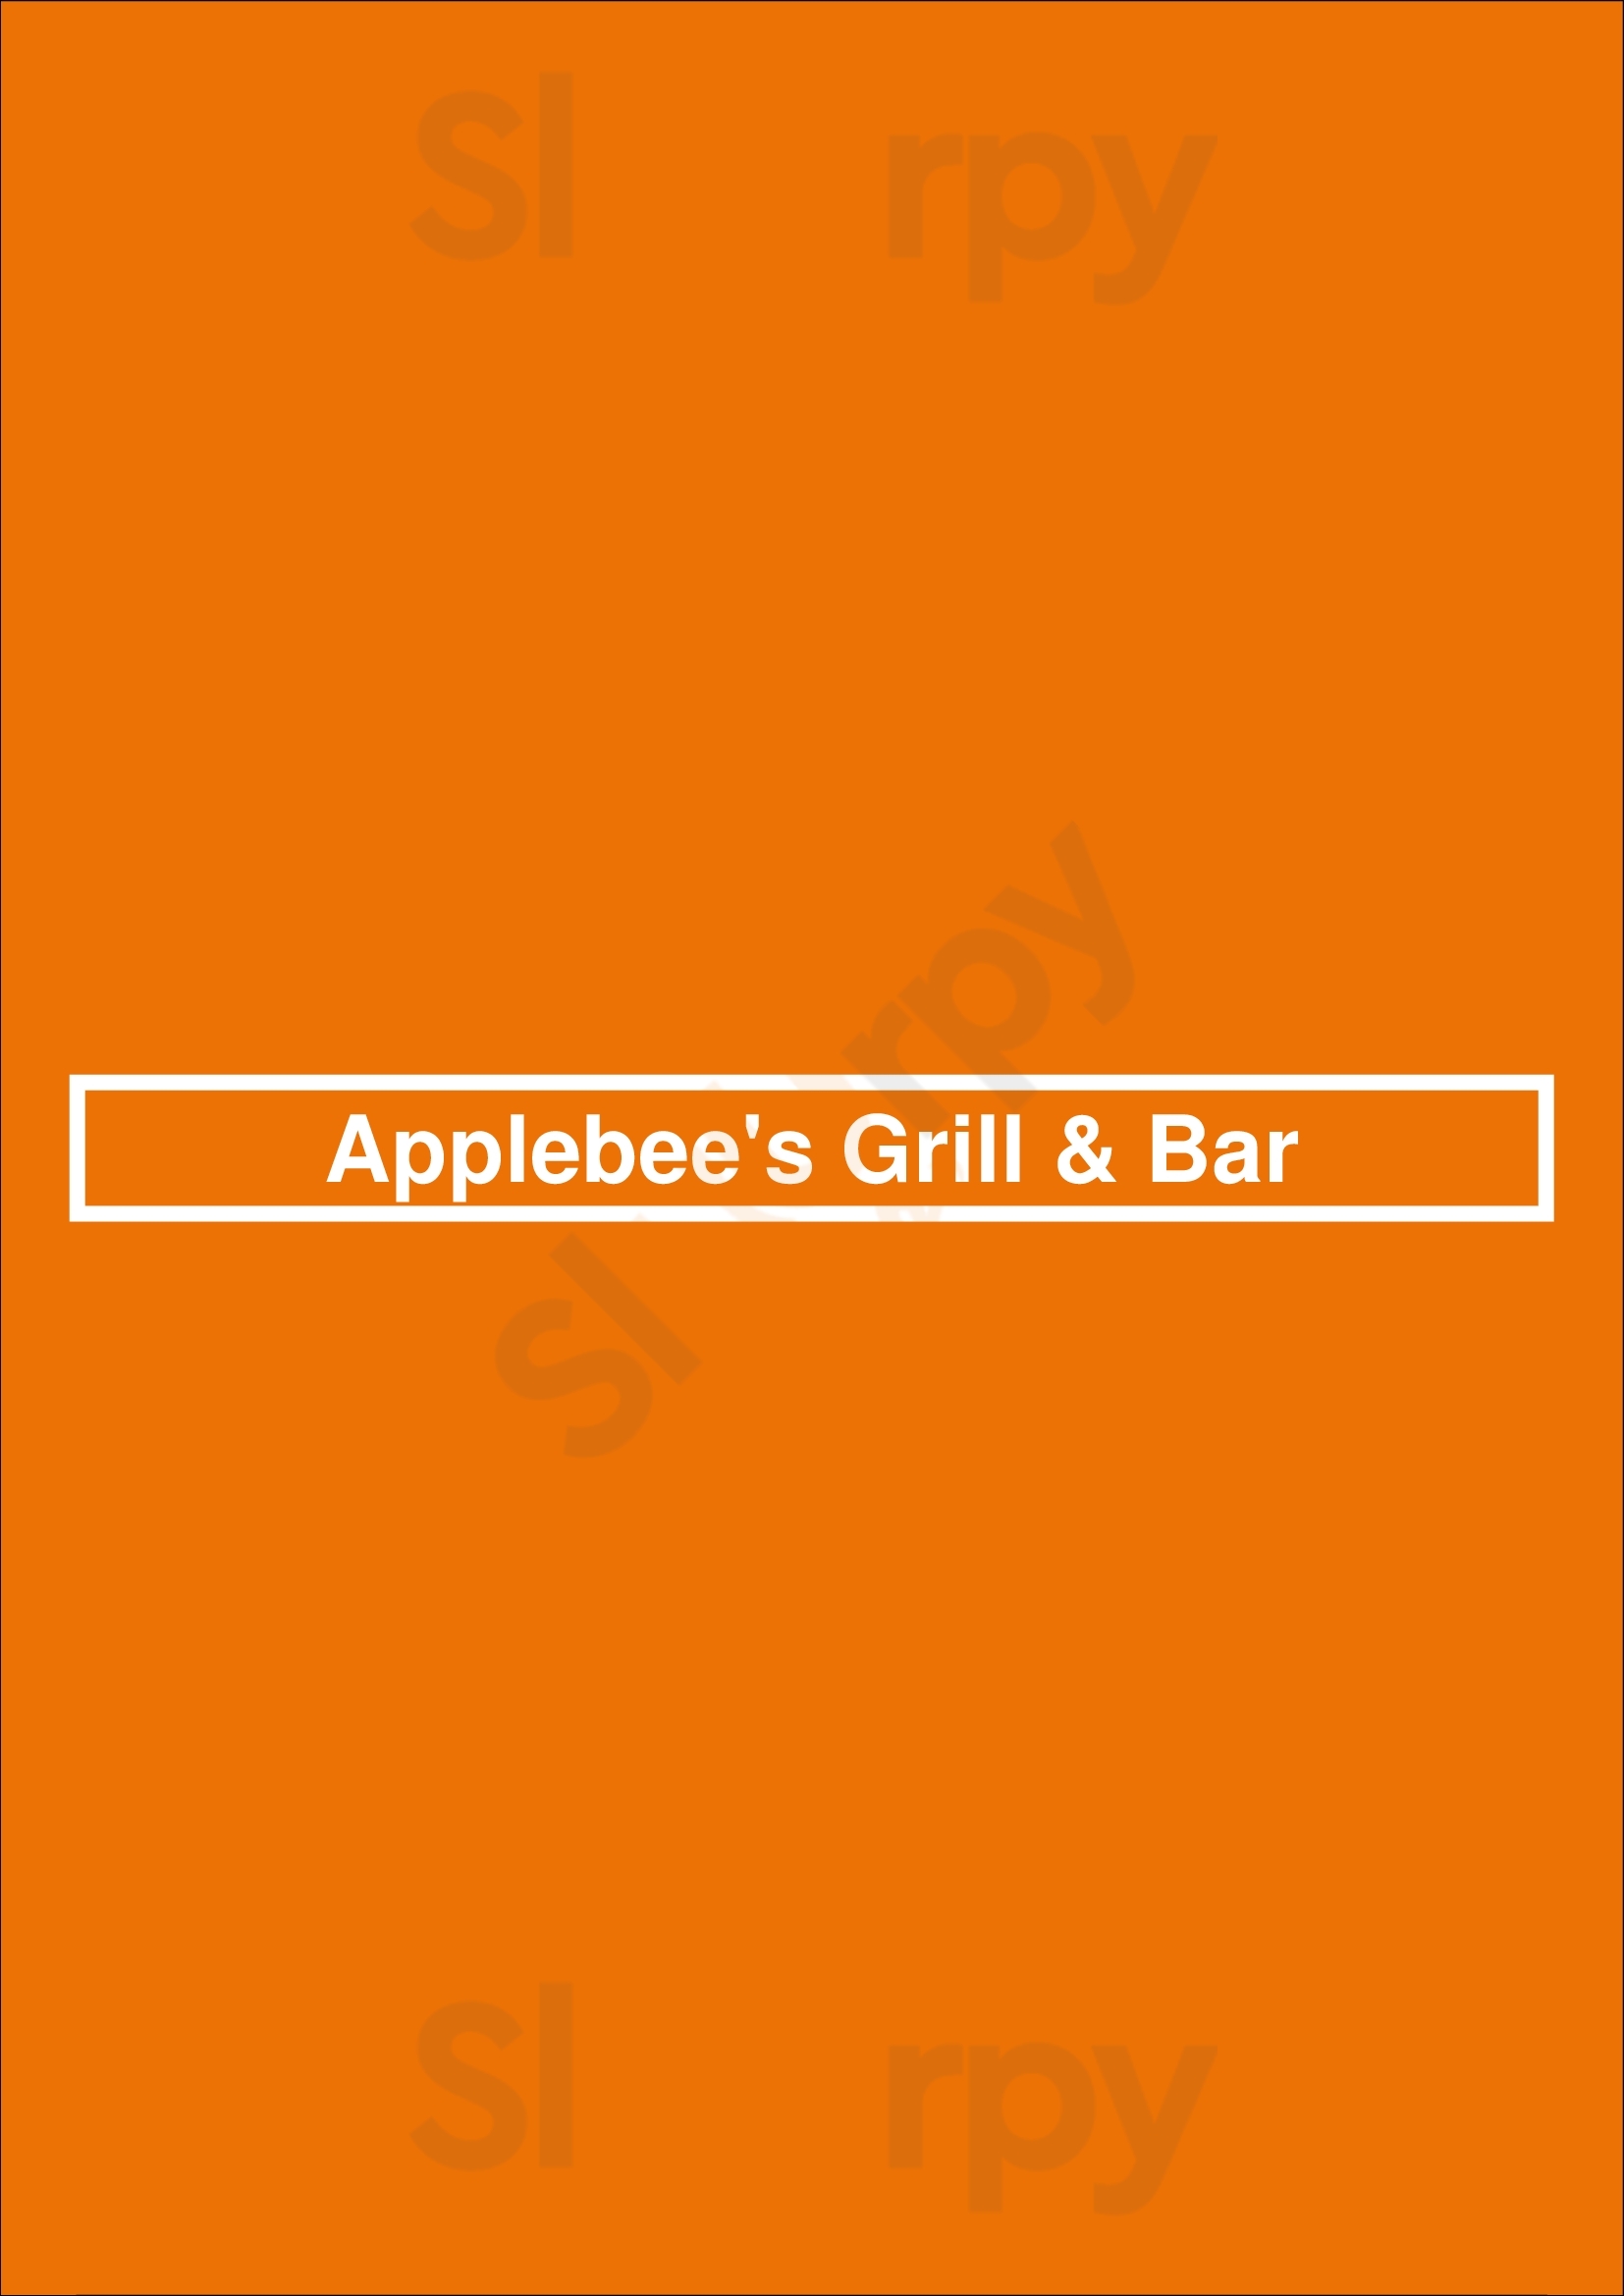 Applebee's Grill & Bar Kissimmee Menu - 1